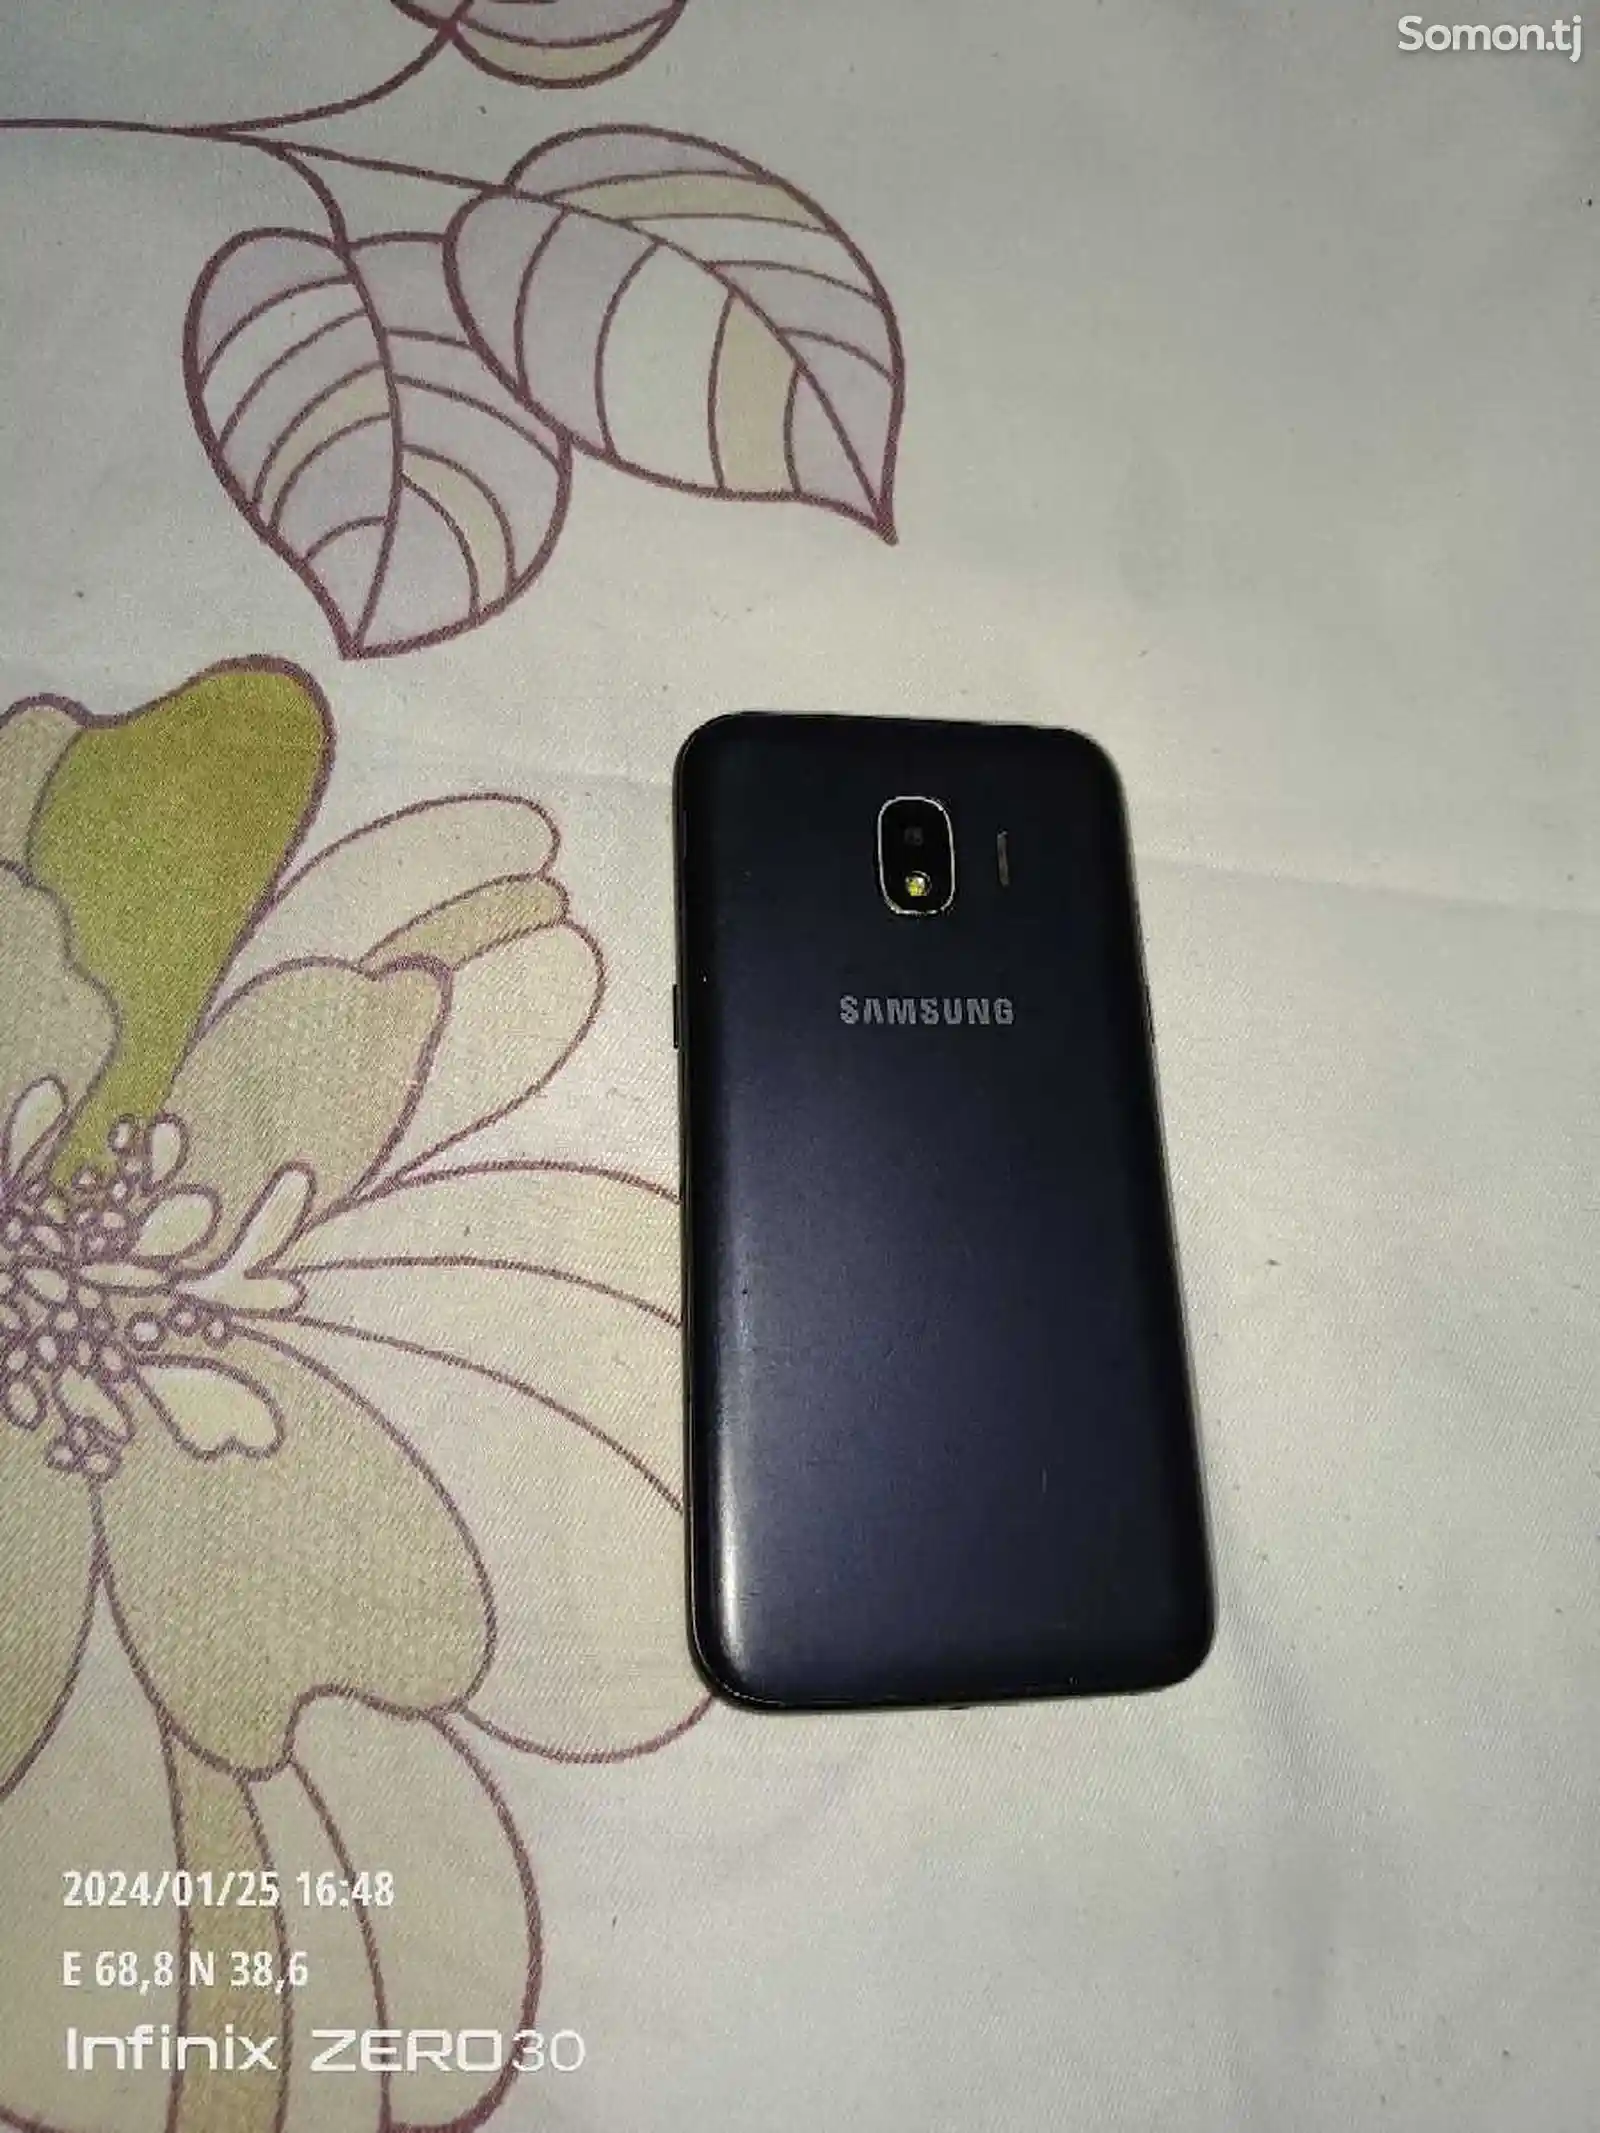 Samsung Galaxy J2 16GB-2